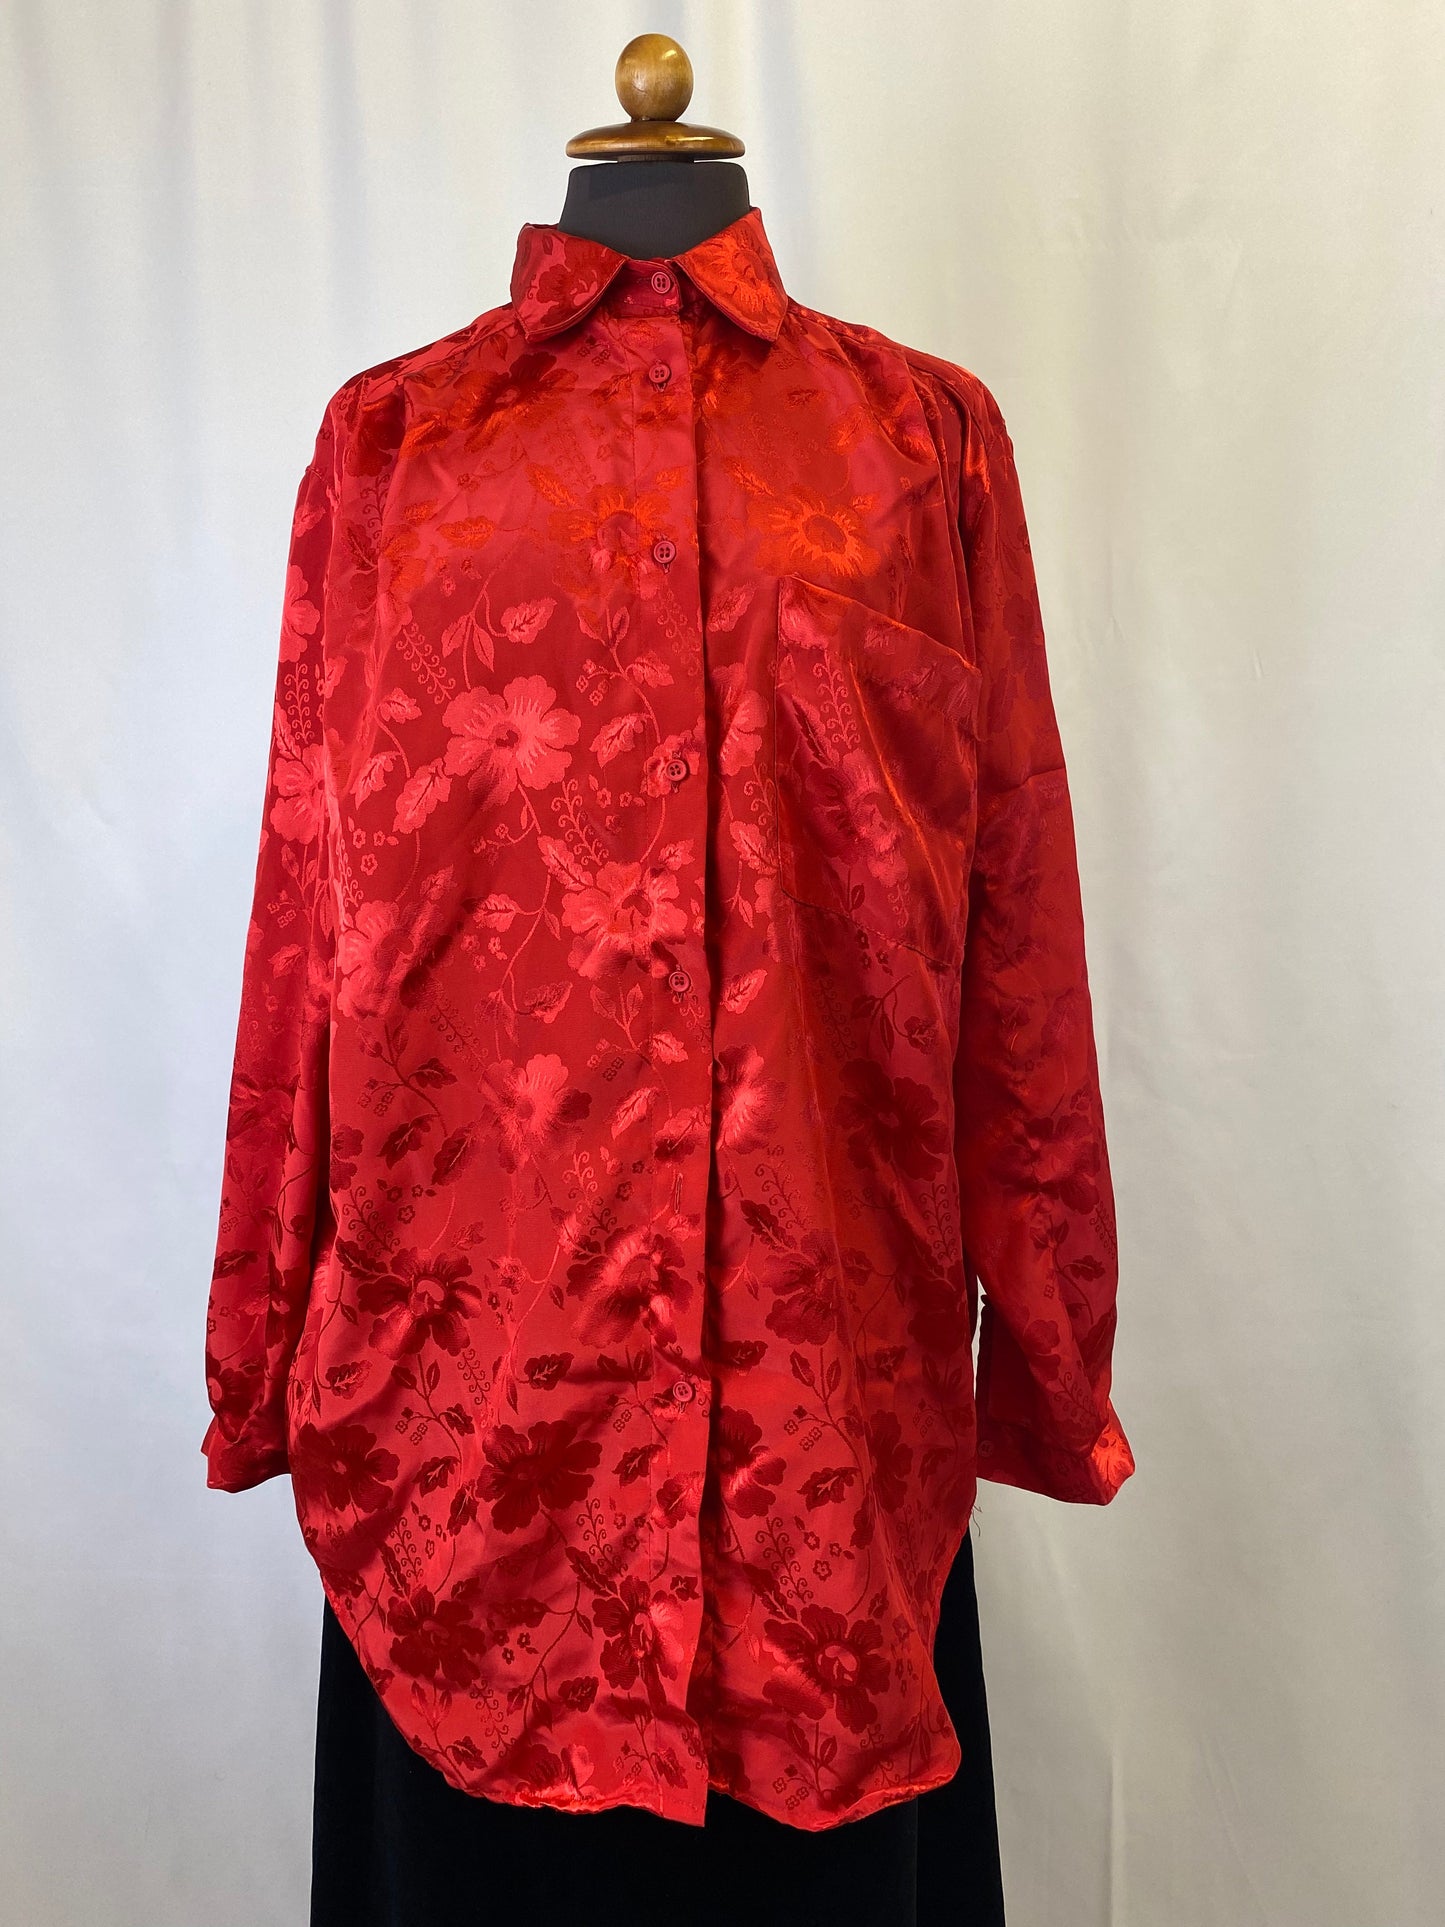 Camicia rossa in broccato - TG. 46/48/50